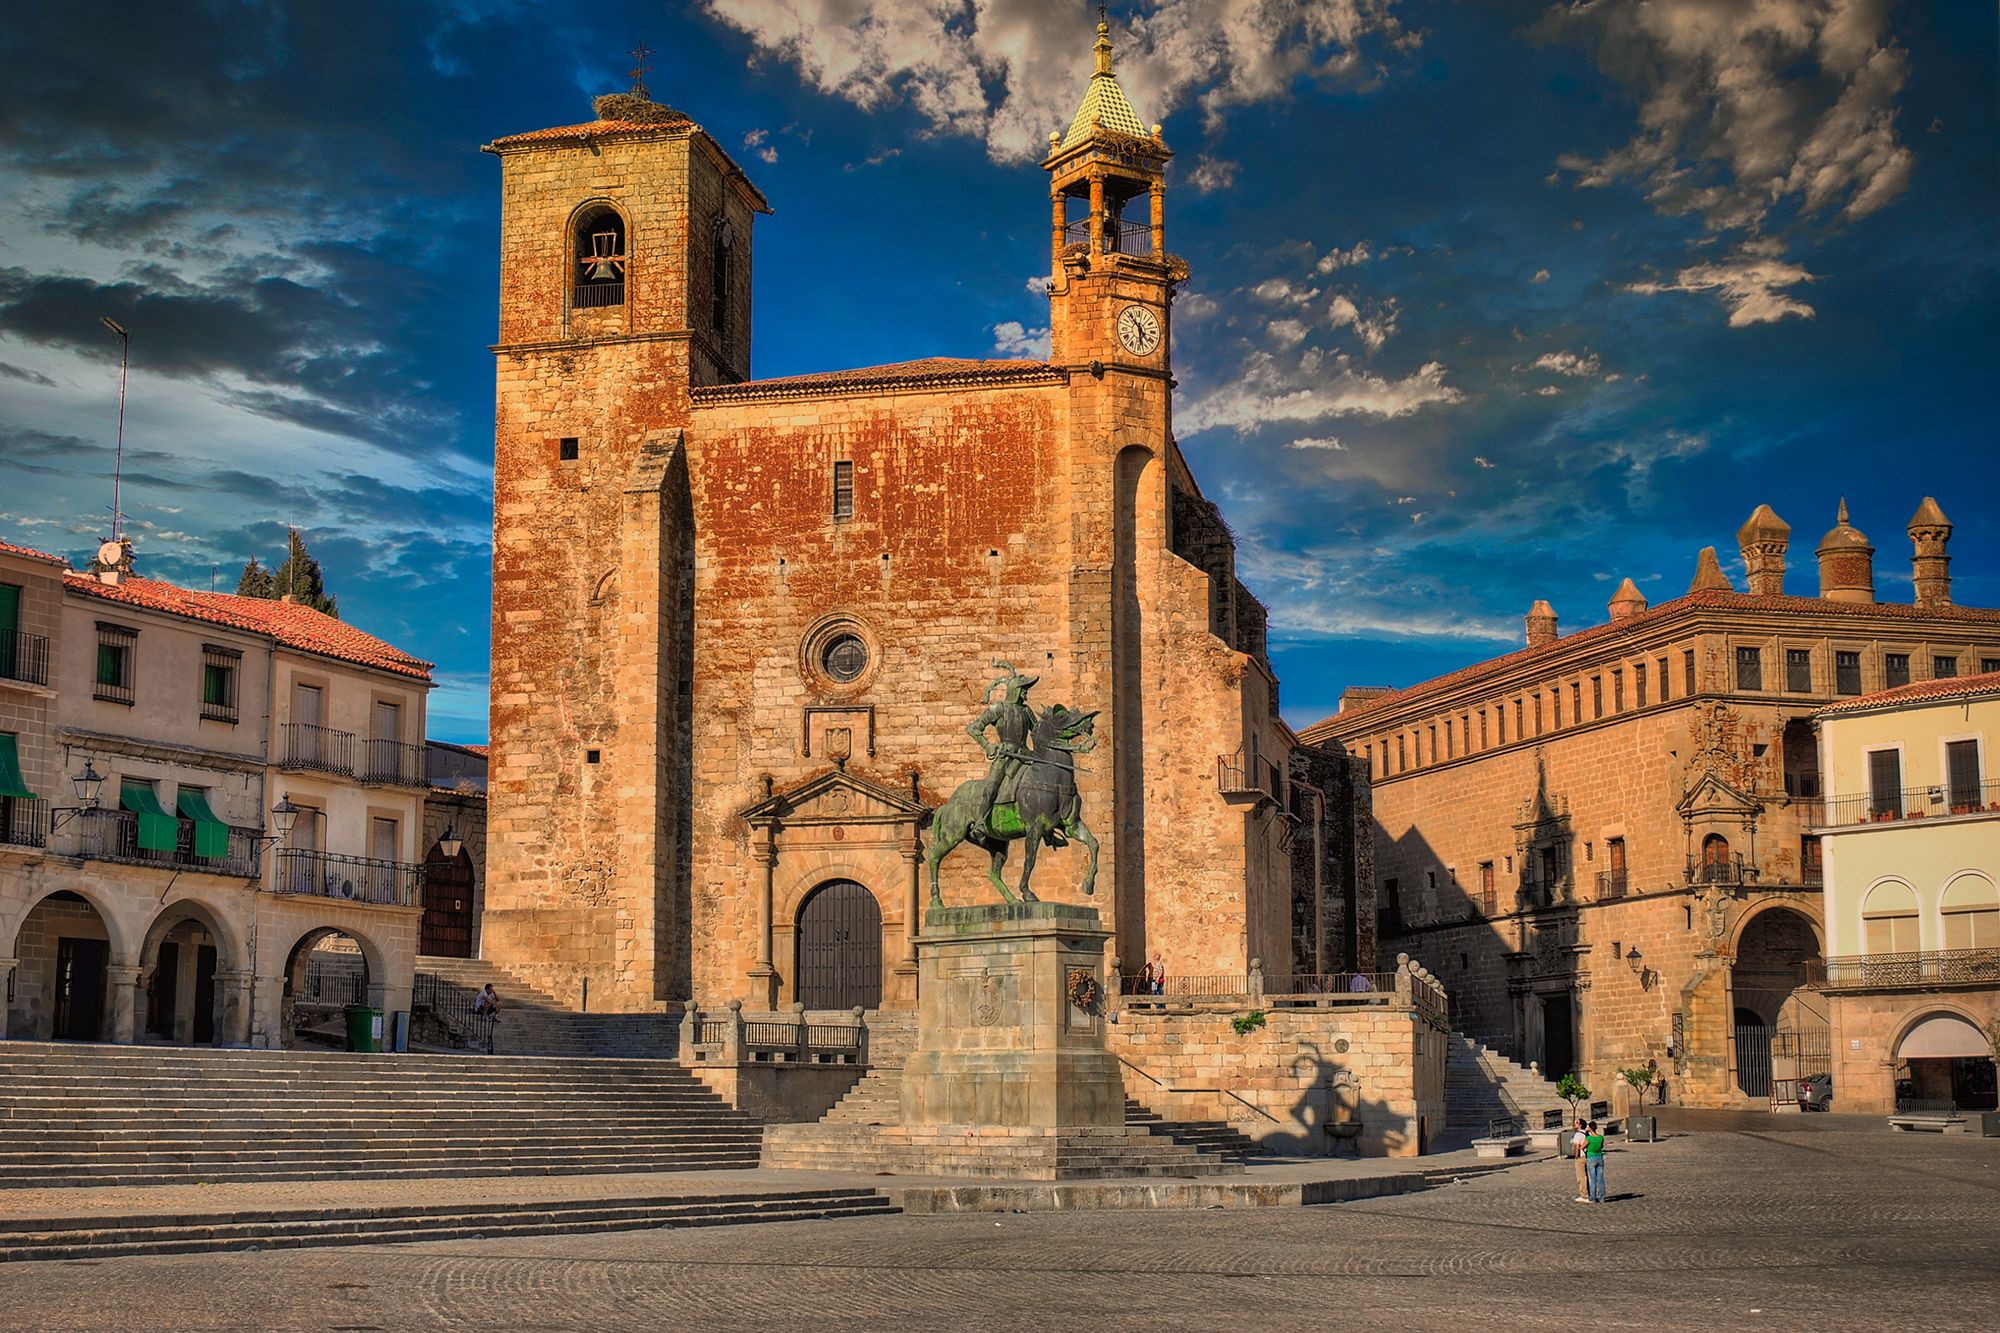 Qué hacer y ver en Trujillo, el pueblo más bonito de Cáceres